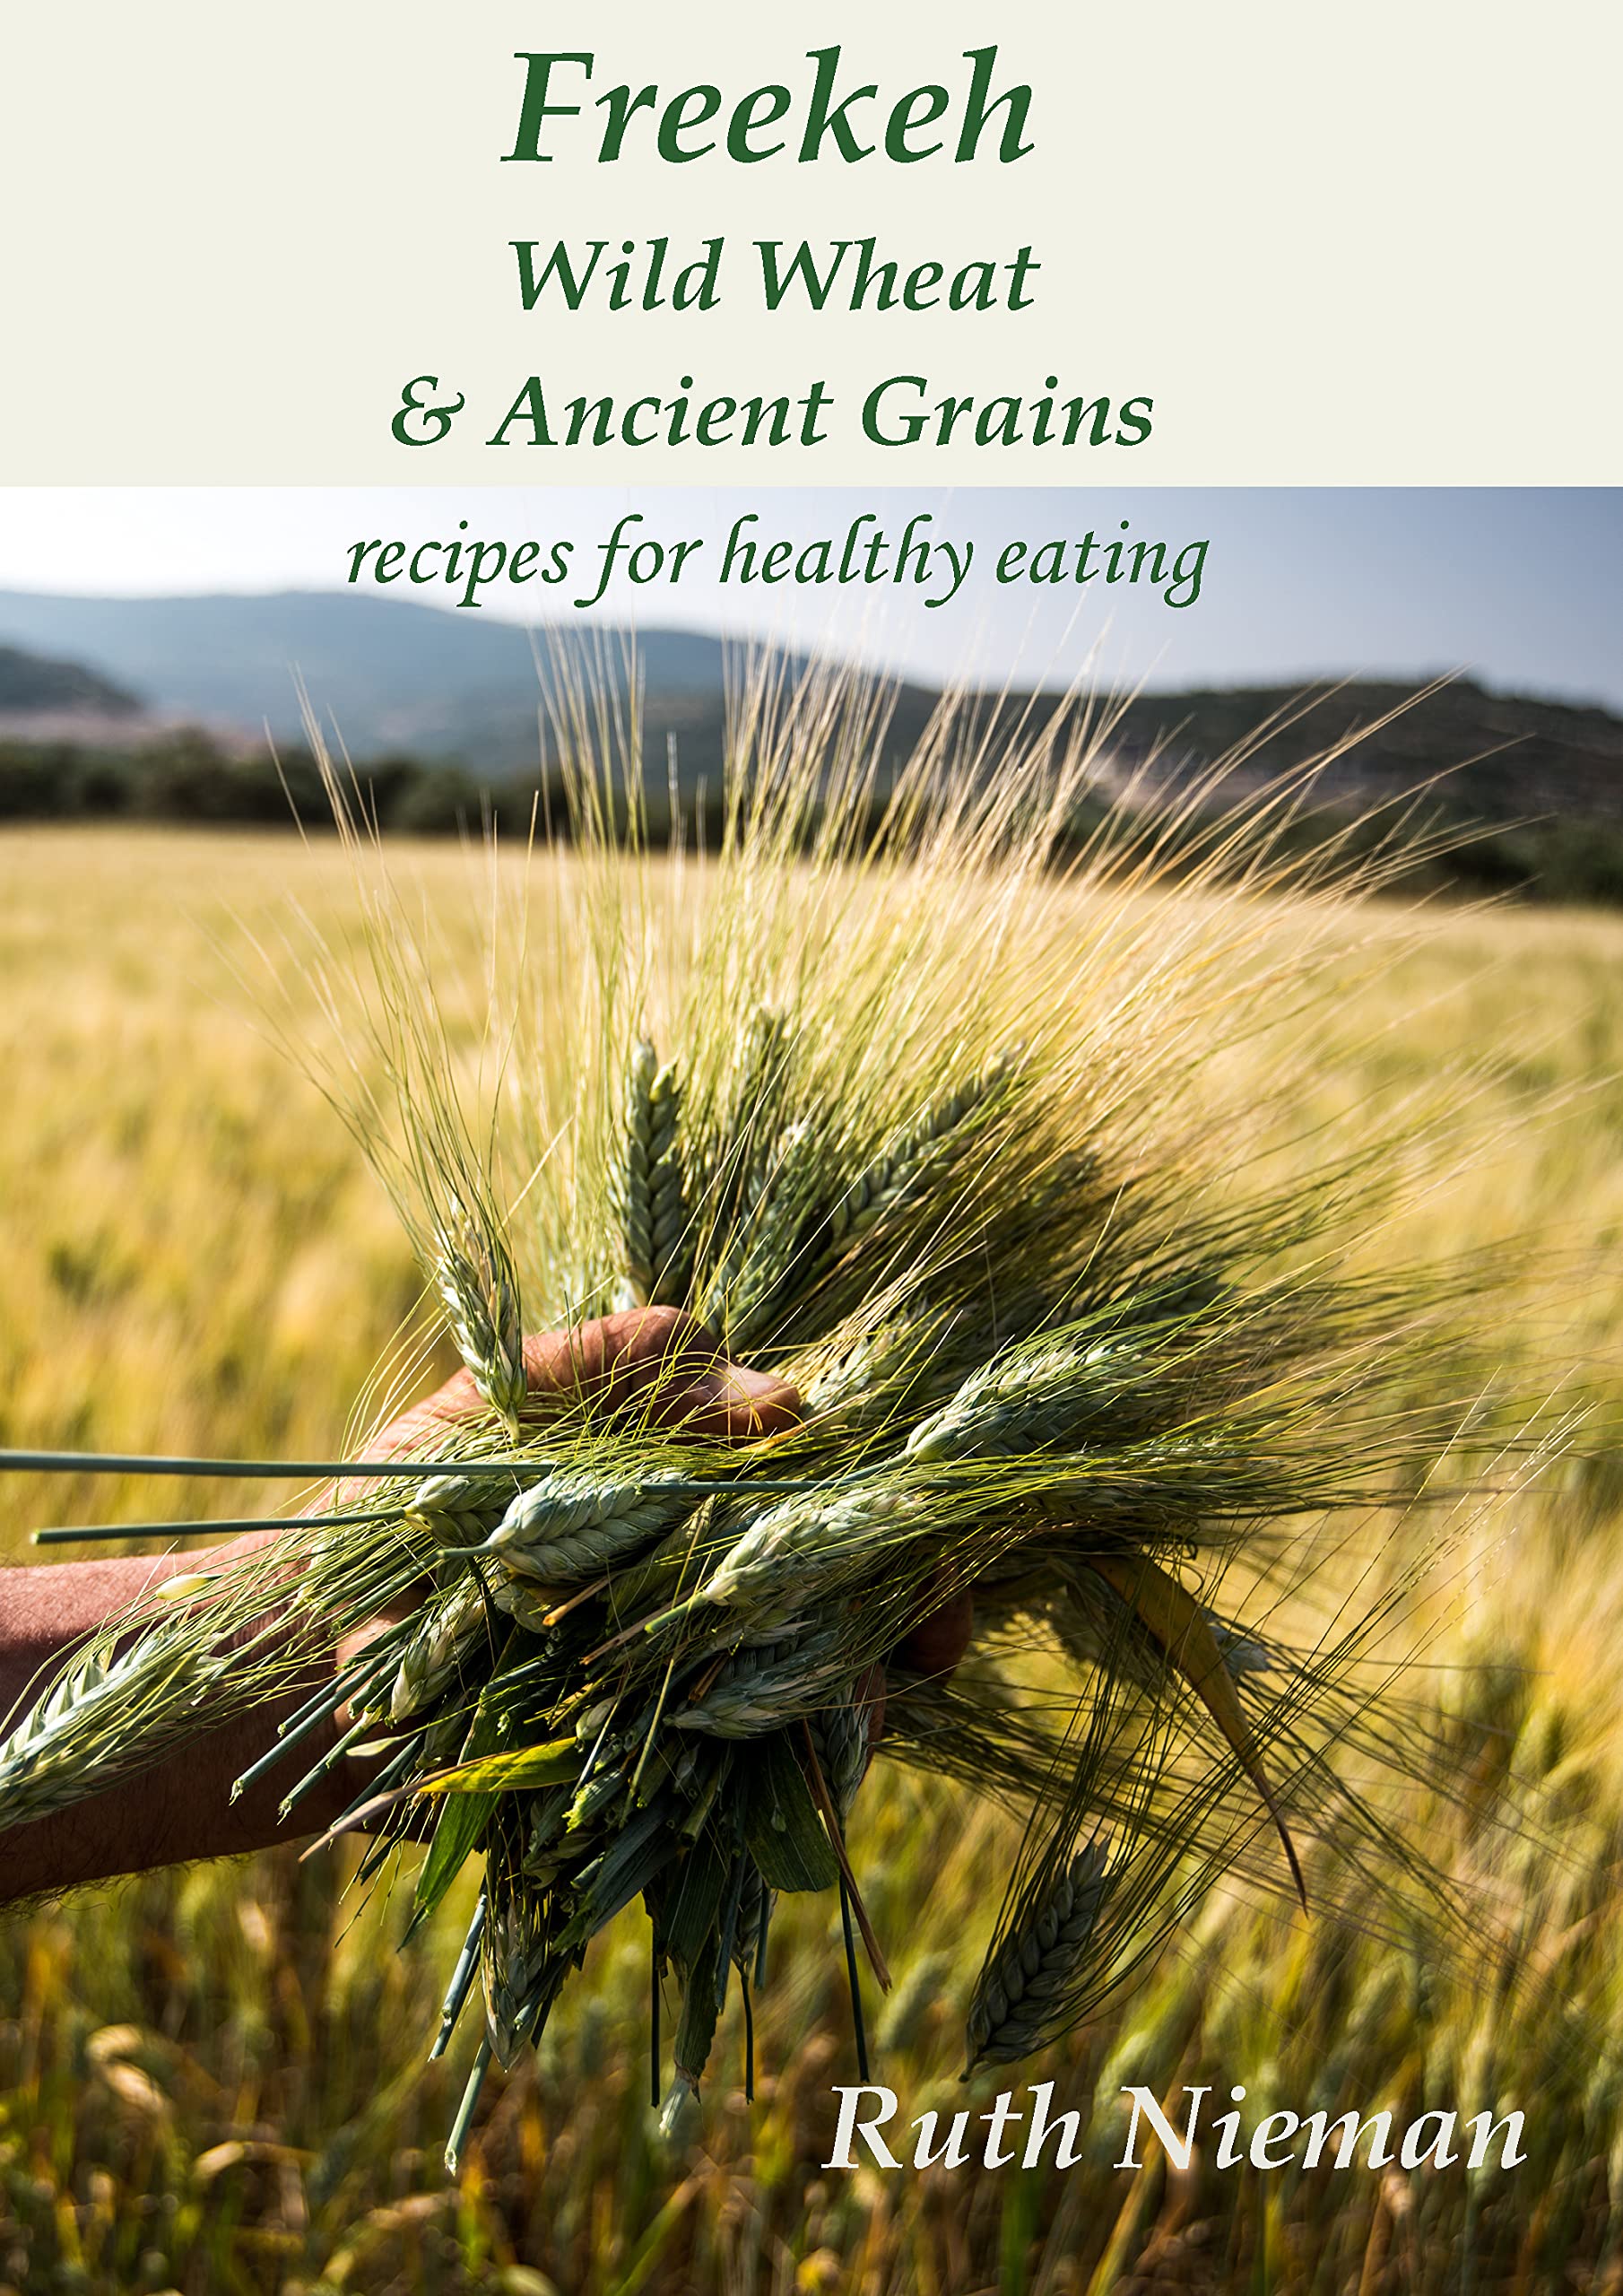 Freekeh, Wild Wheat and Ancient Grains (Ruth Nieman)